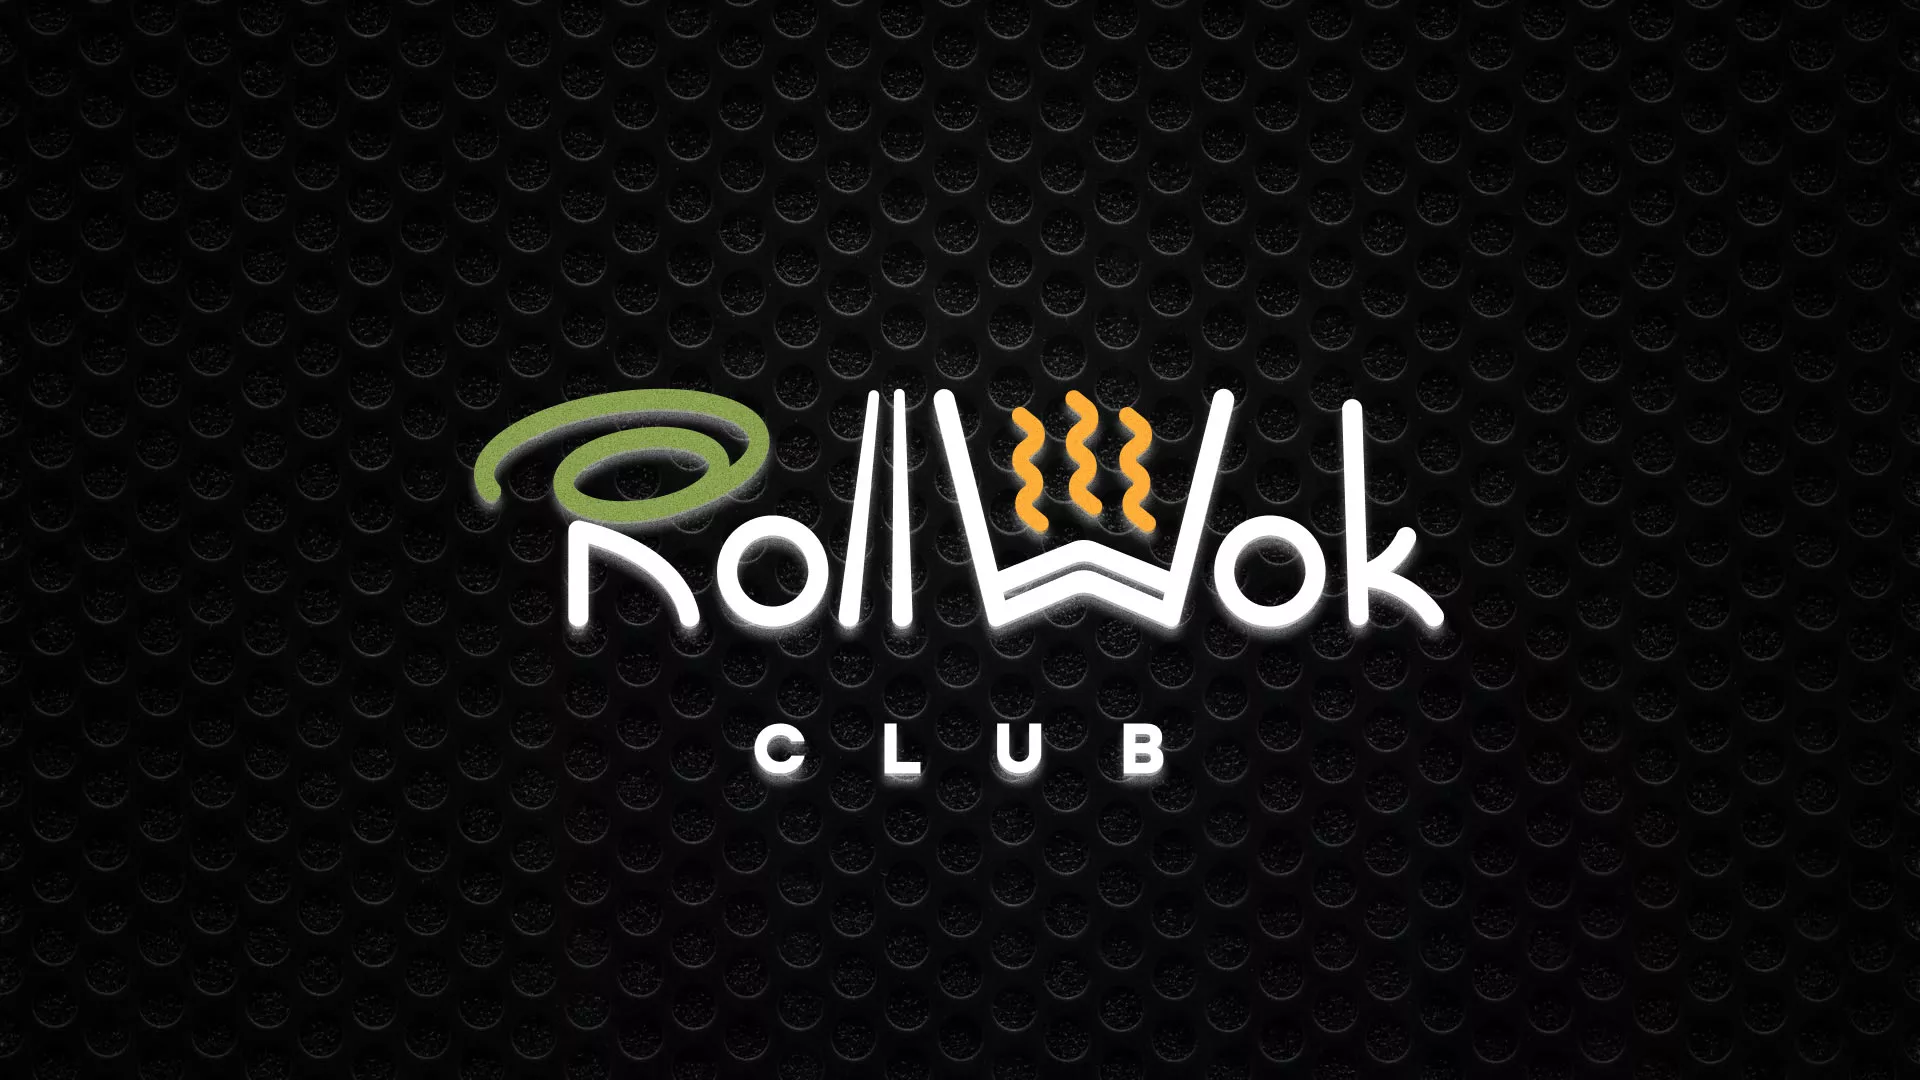 Брендирование торговых точек суши-бара «Roll Wok Club» в Белогорске